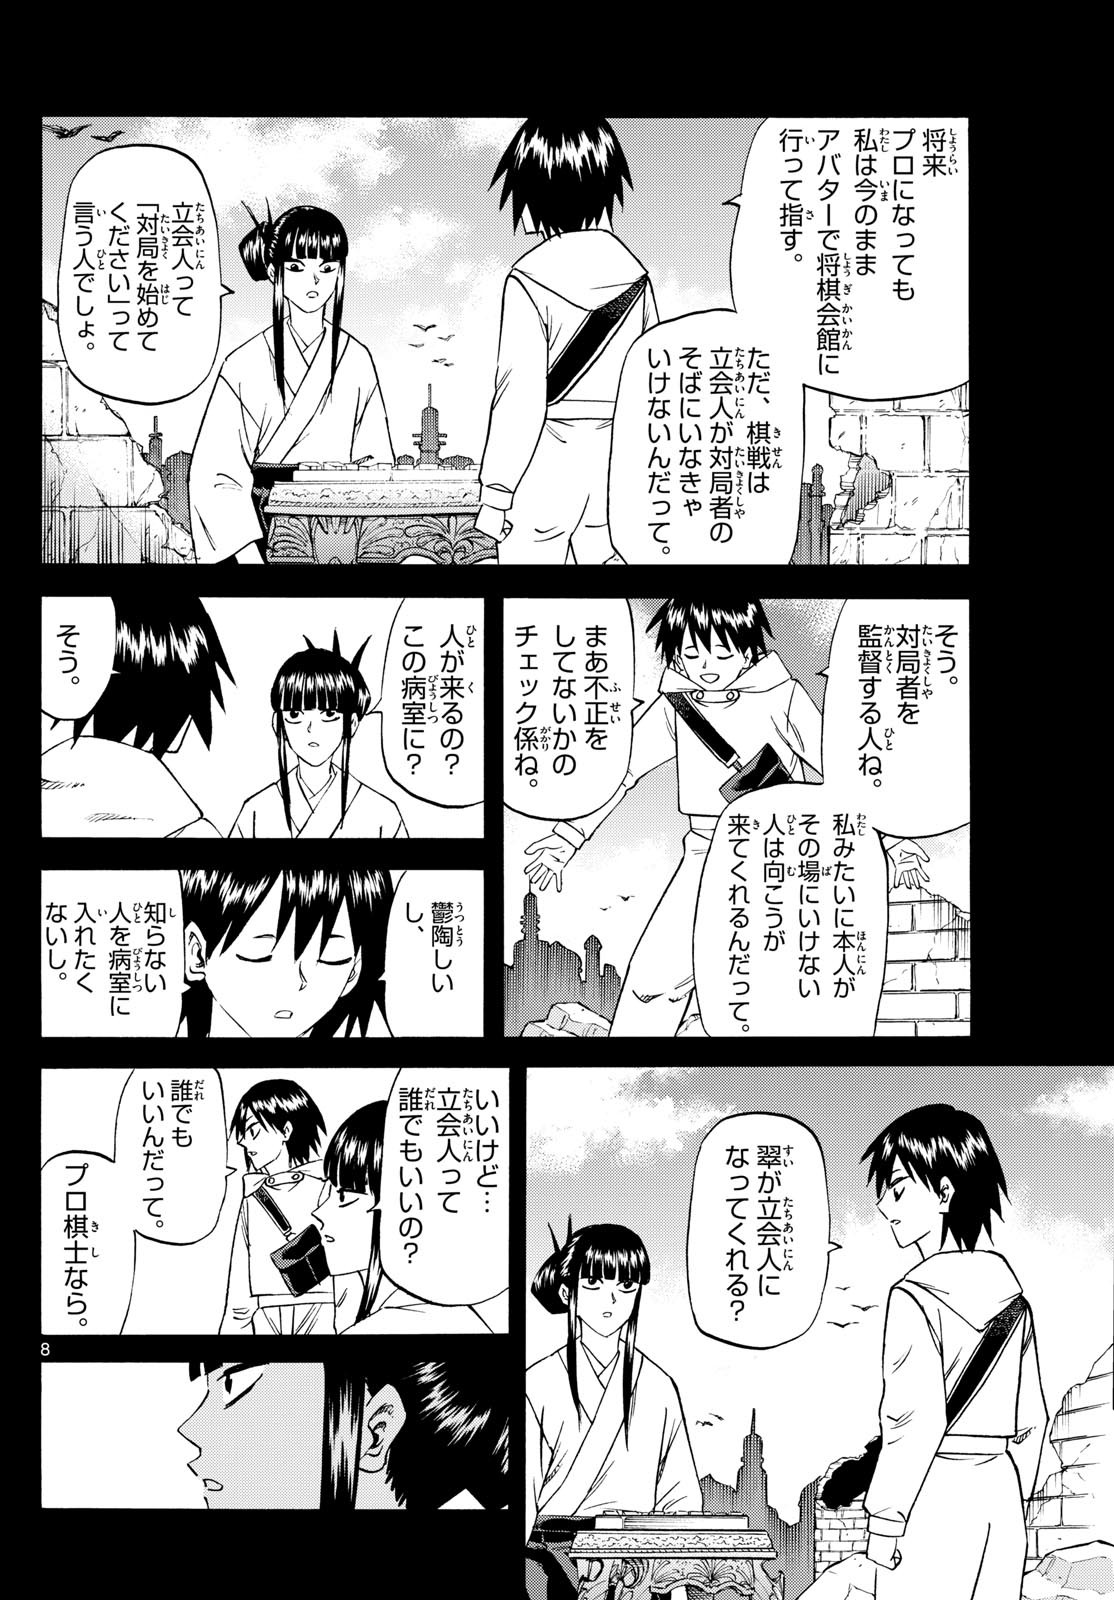 Ryu-to-Ichigo - Chapter 194 - Page 8